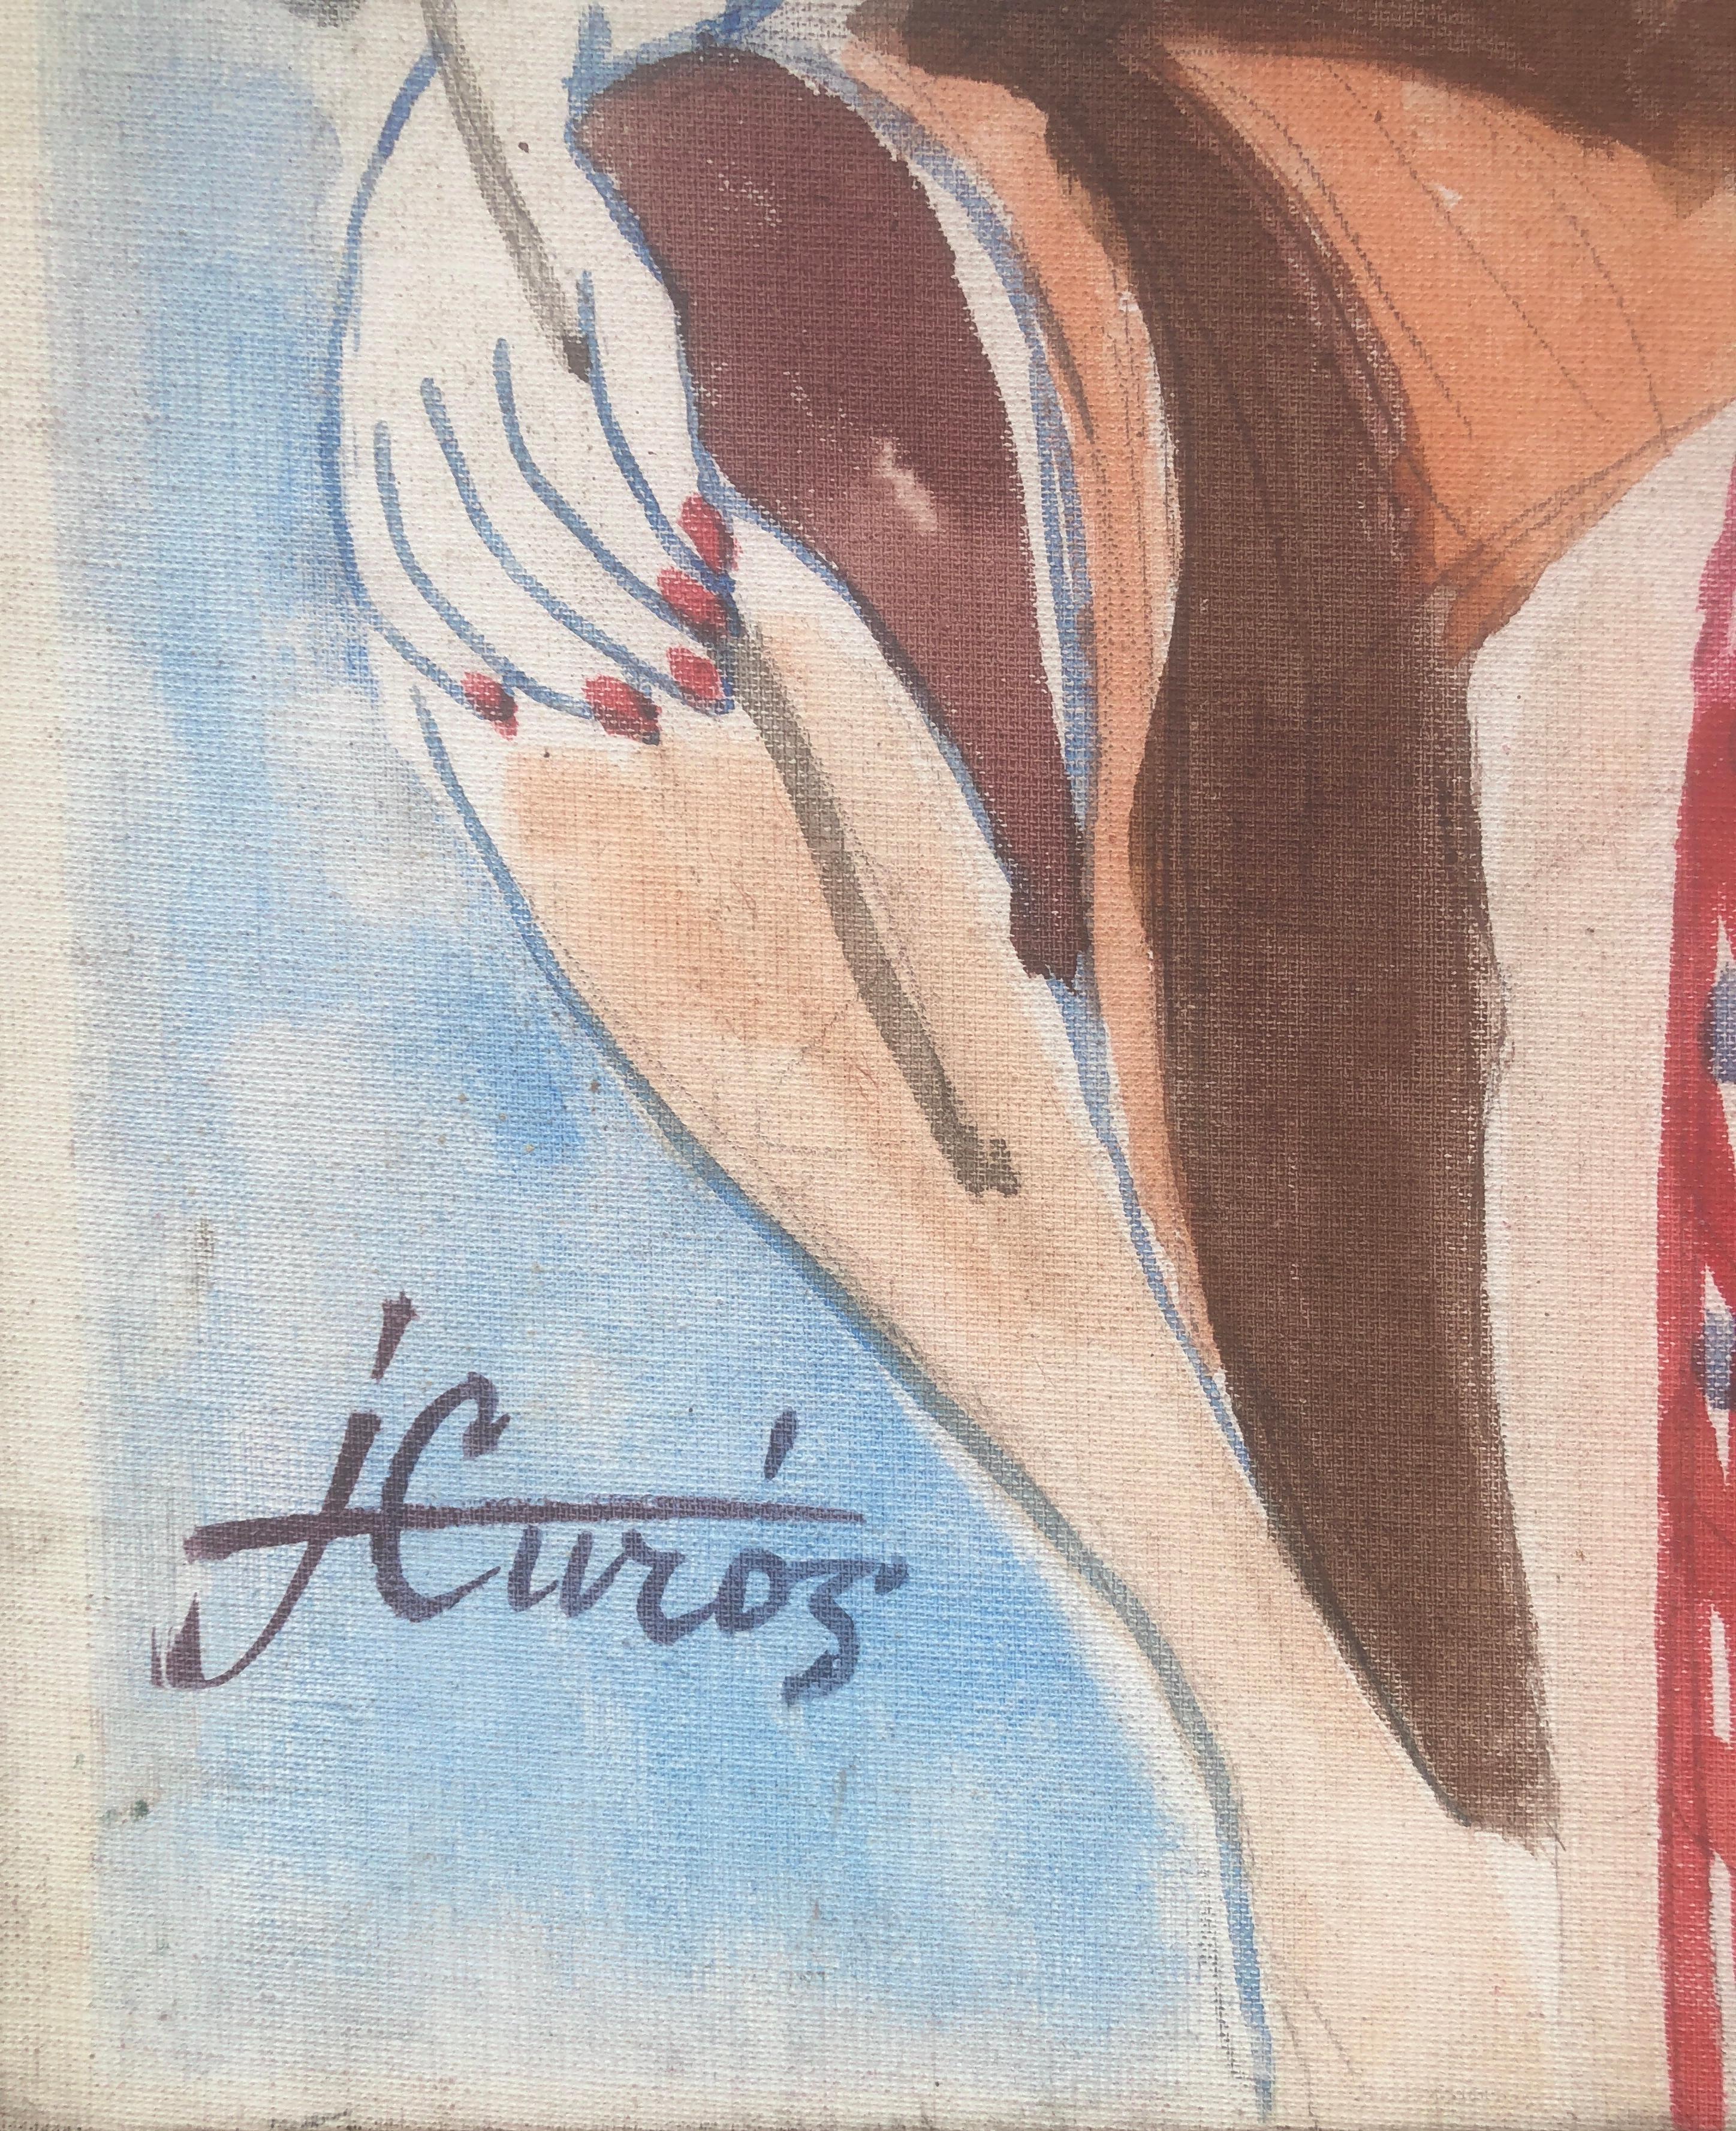 Femme posant peinture mixte - Painting de Jordi Curos